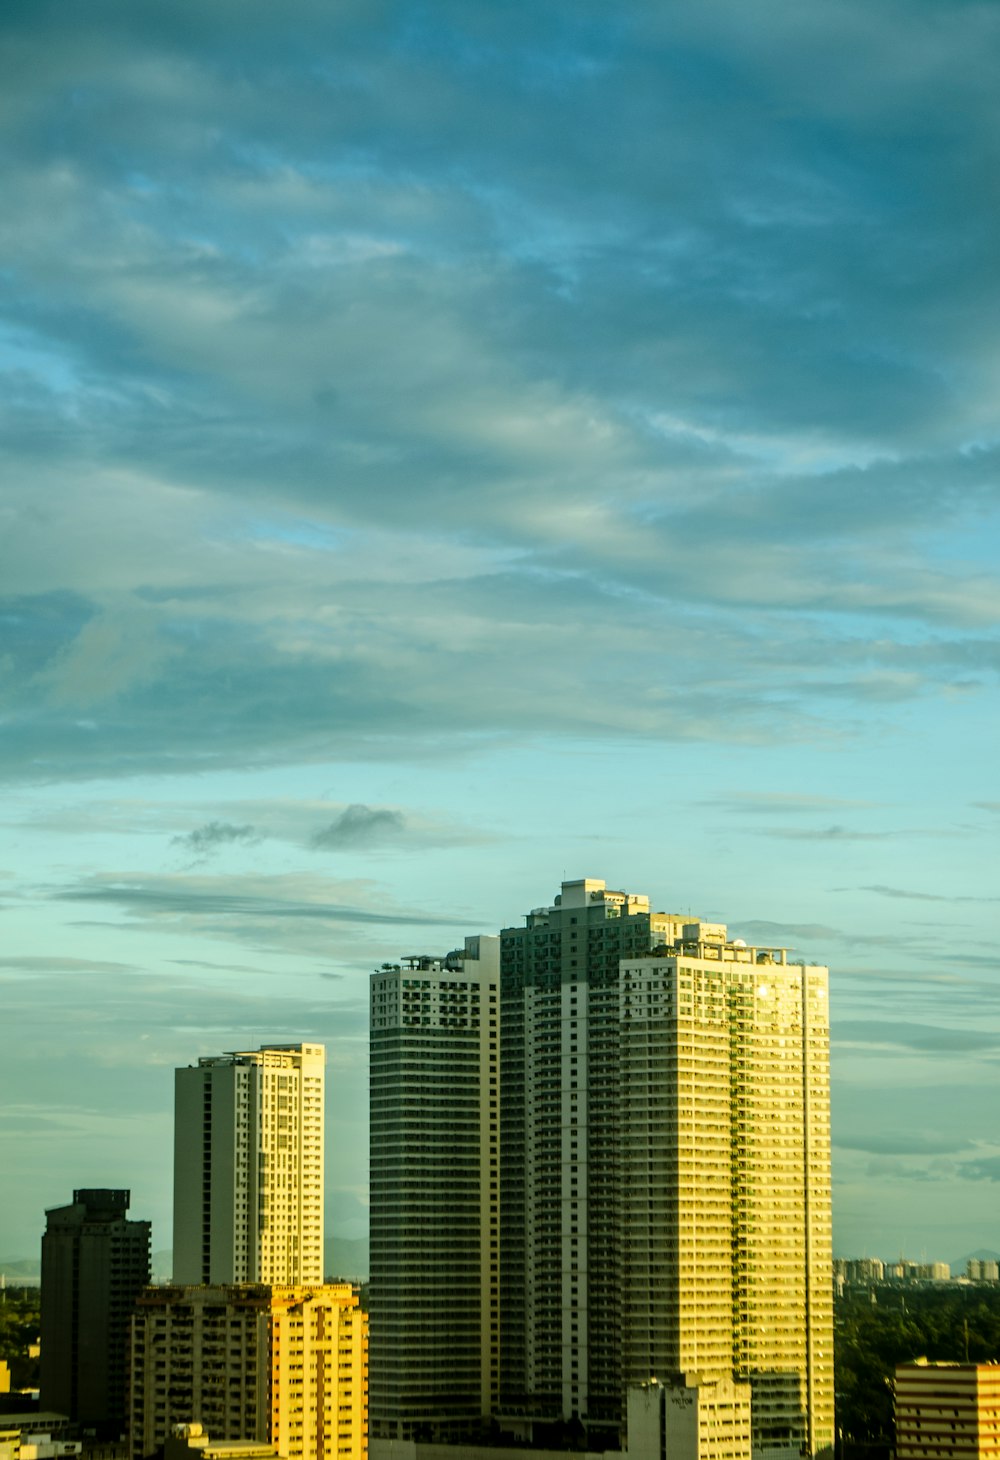 a city skyline with tall buildings under a cloudy sky